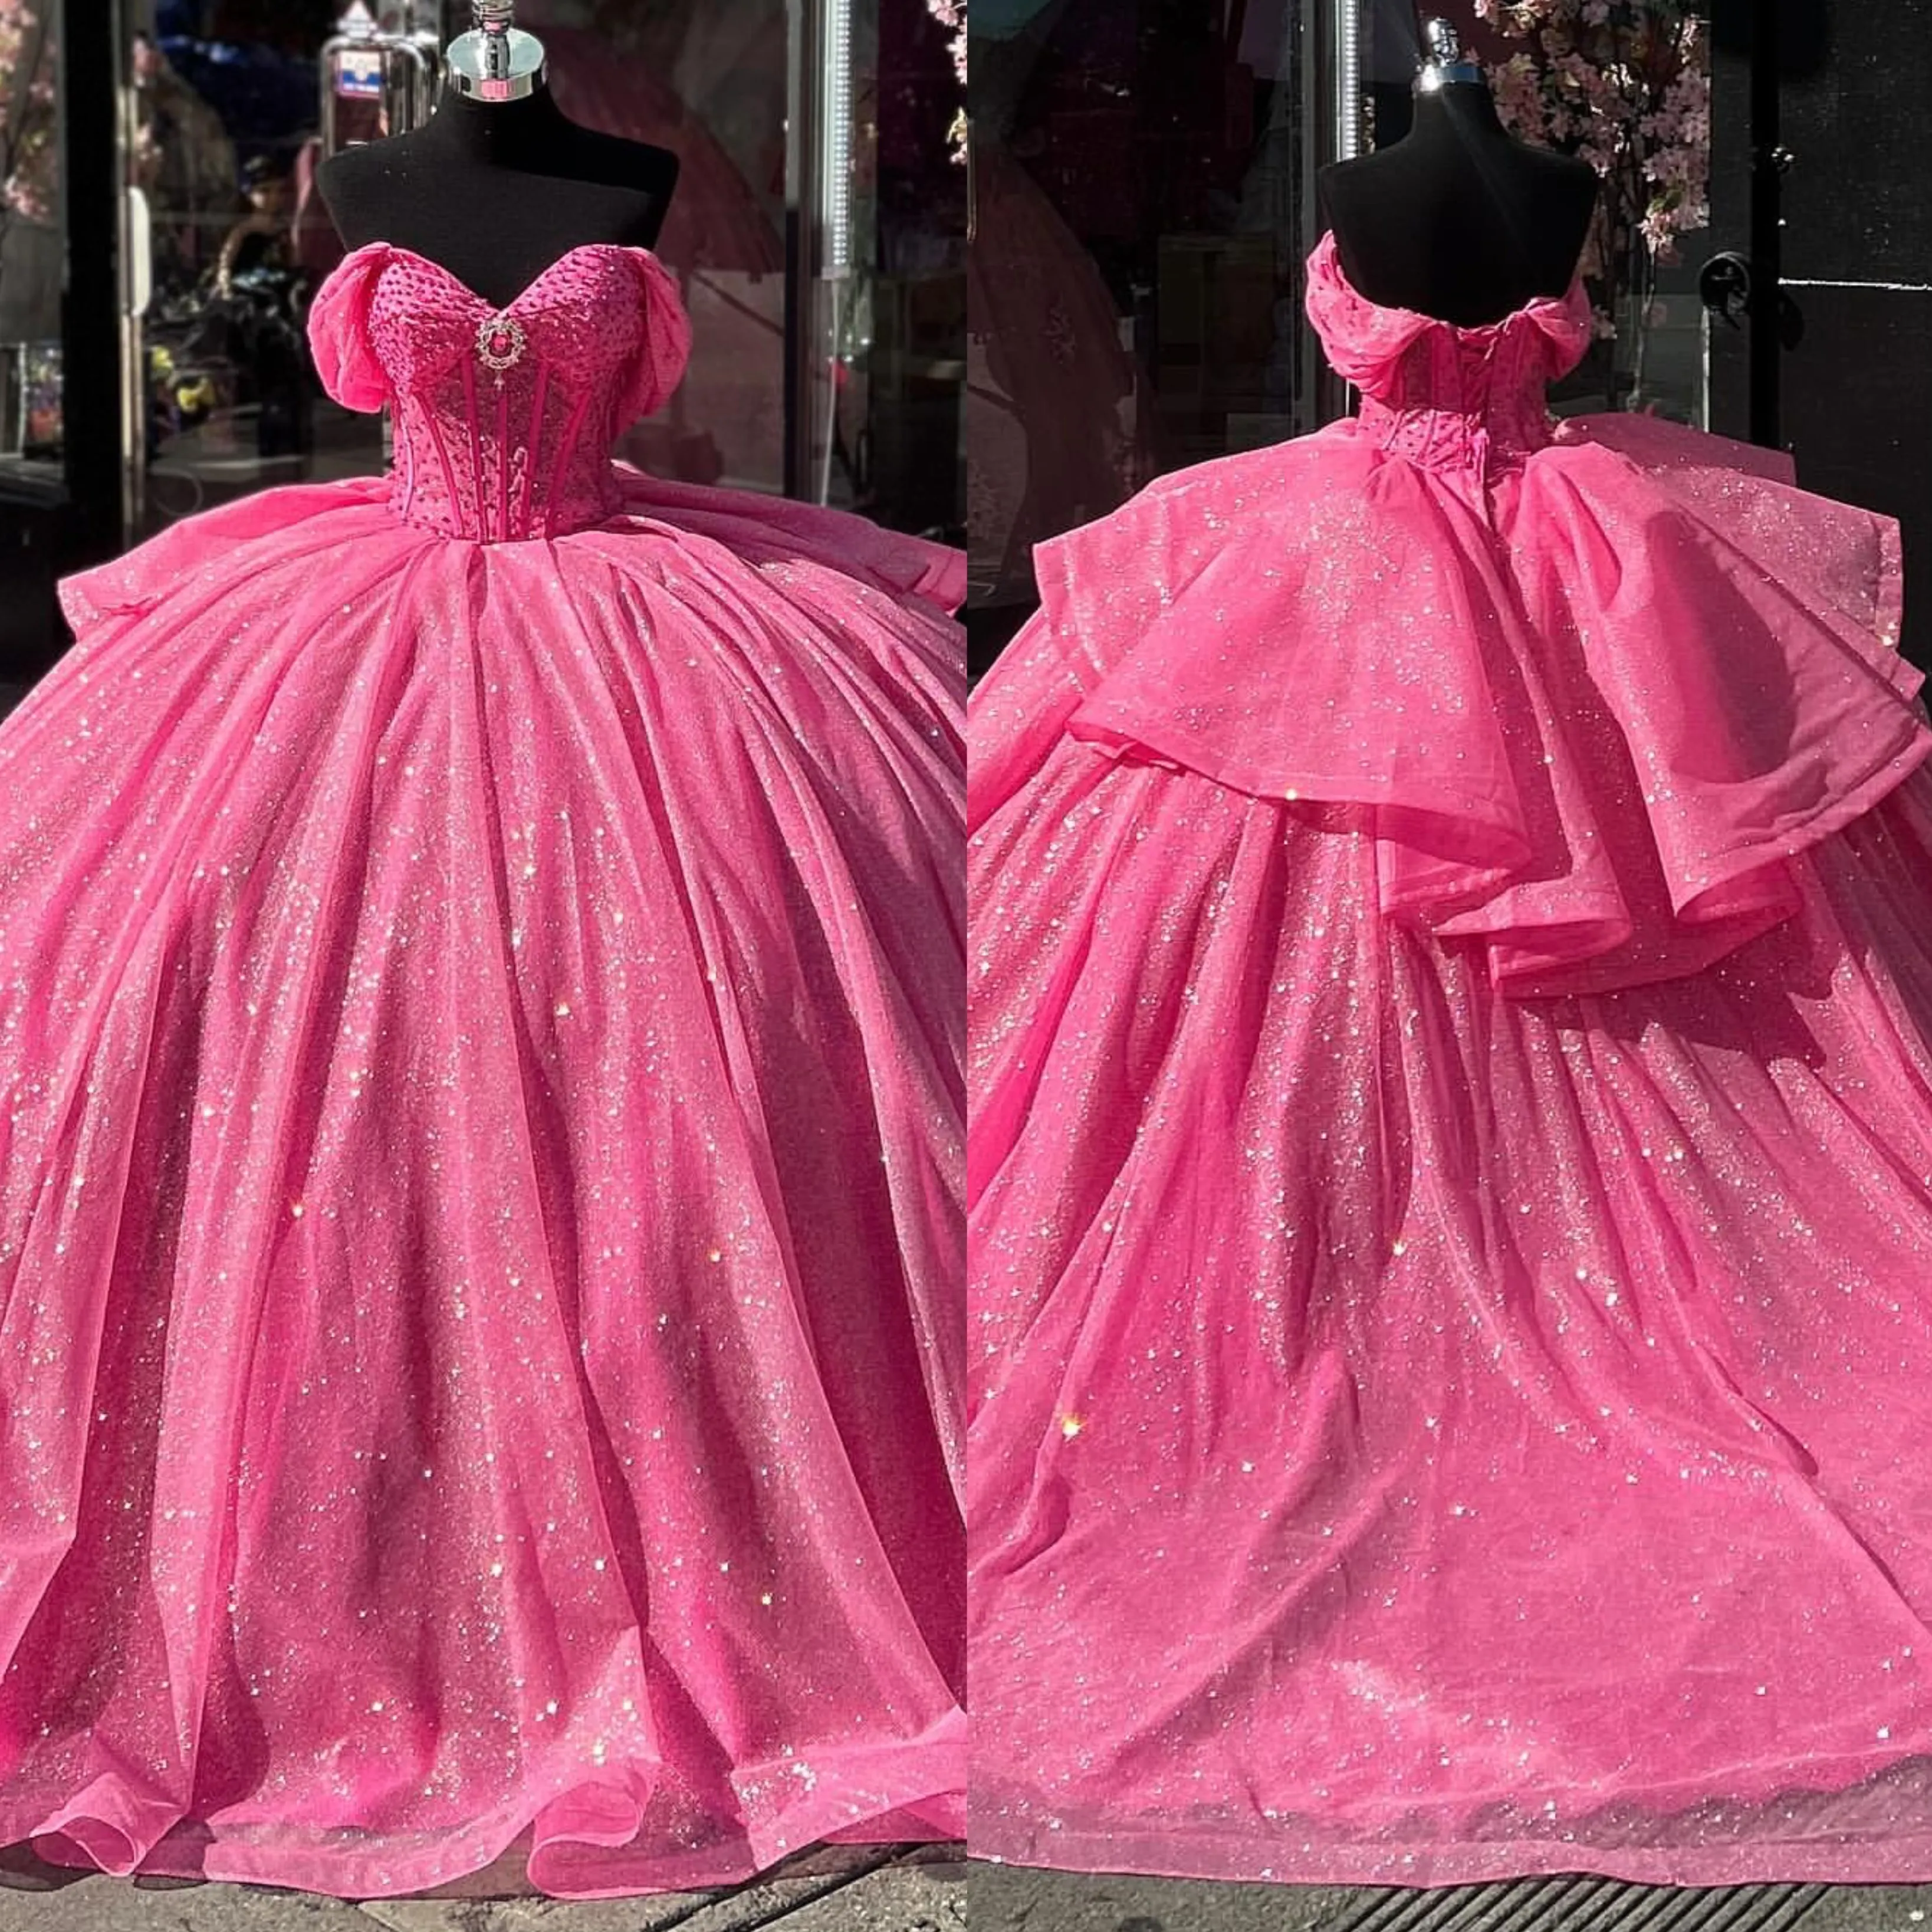 Magnifique robe rose princesse quinceanera Robe de bal scintillée de bal à épaule paillettes paillettes diamant vestido de quinceanera corsage sweet 15 robe de mascarade